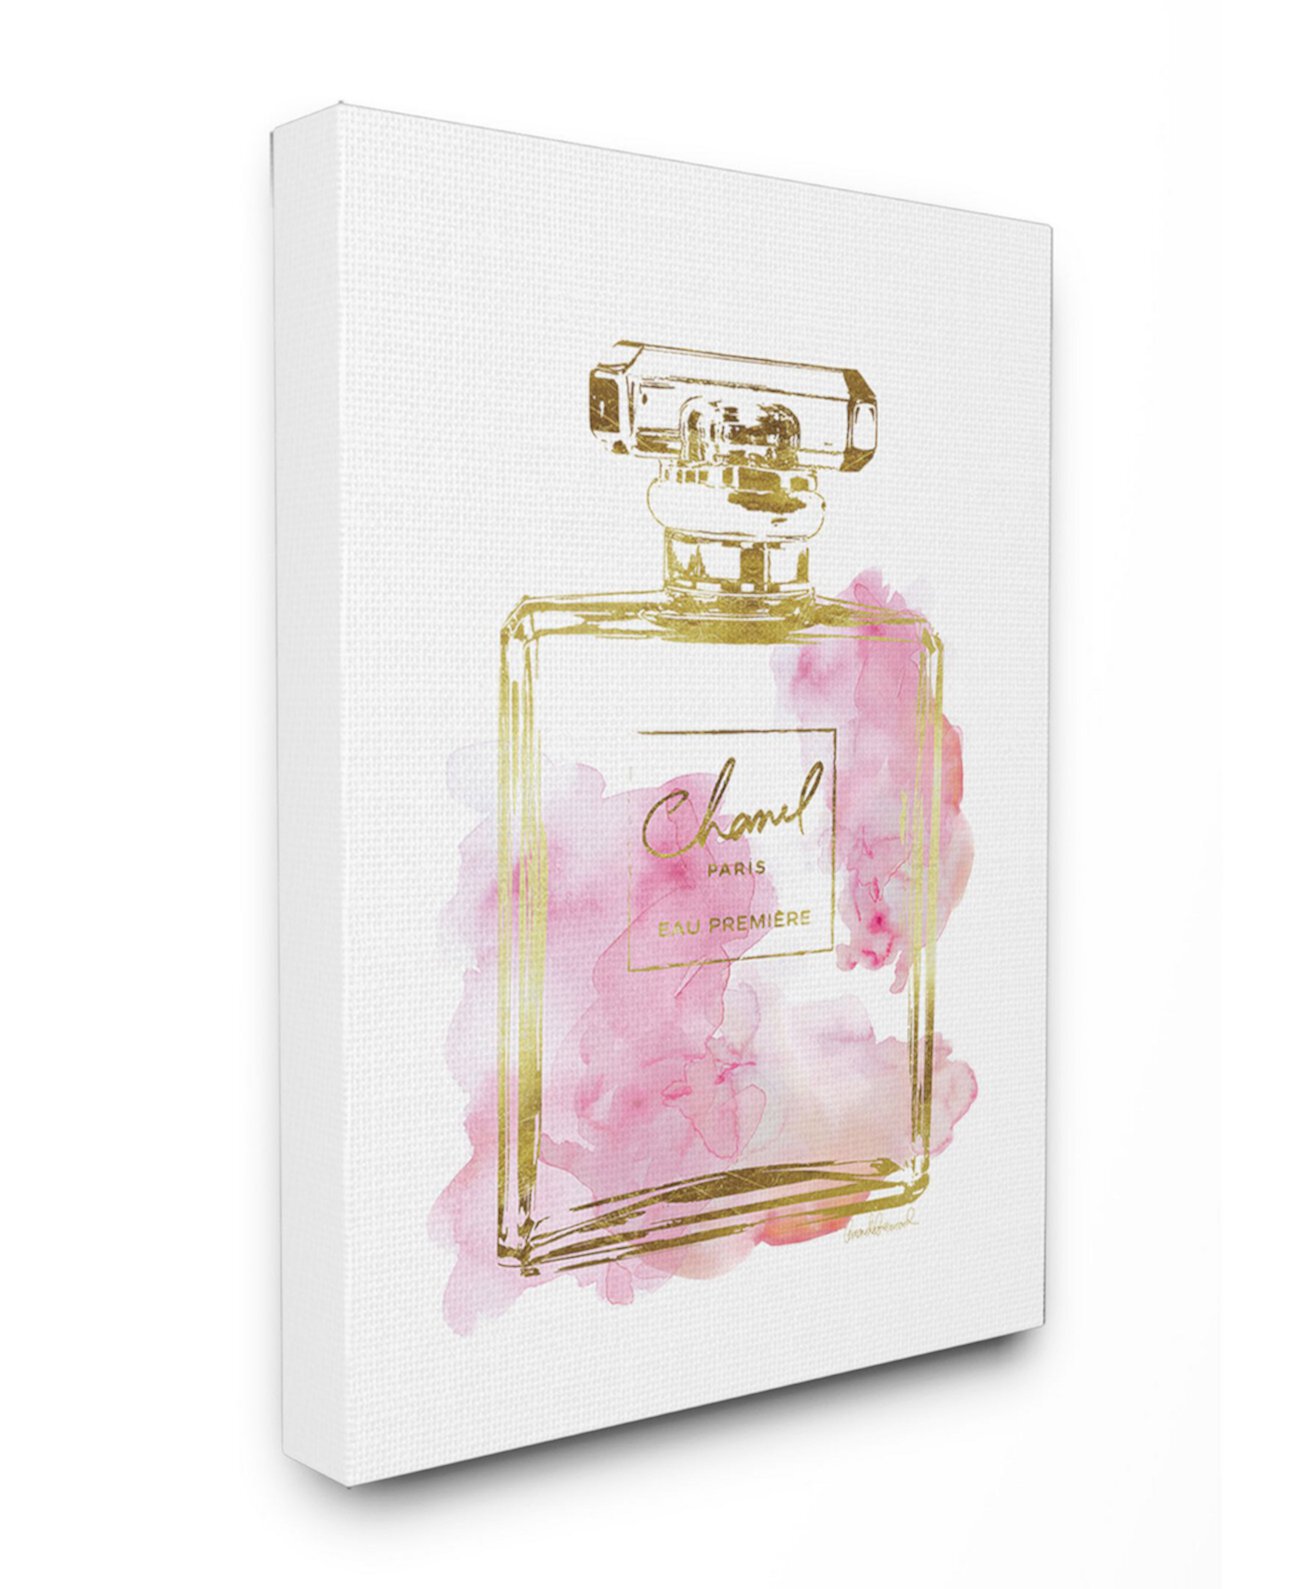 Гламурный флакон духов, золото, розовый, холст, настенное искусство, 16 "x 20" Stupell Industries